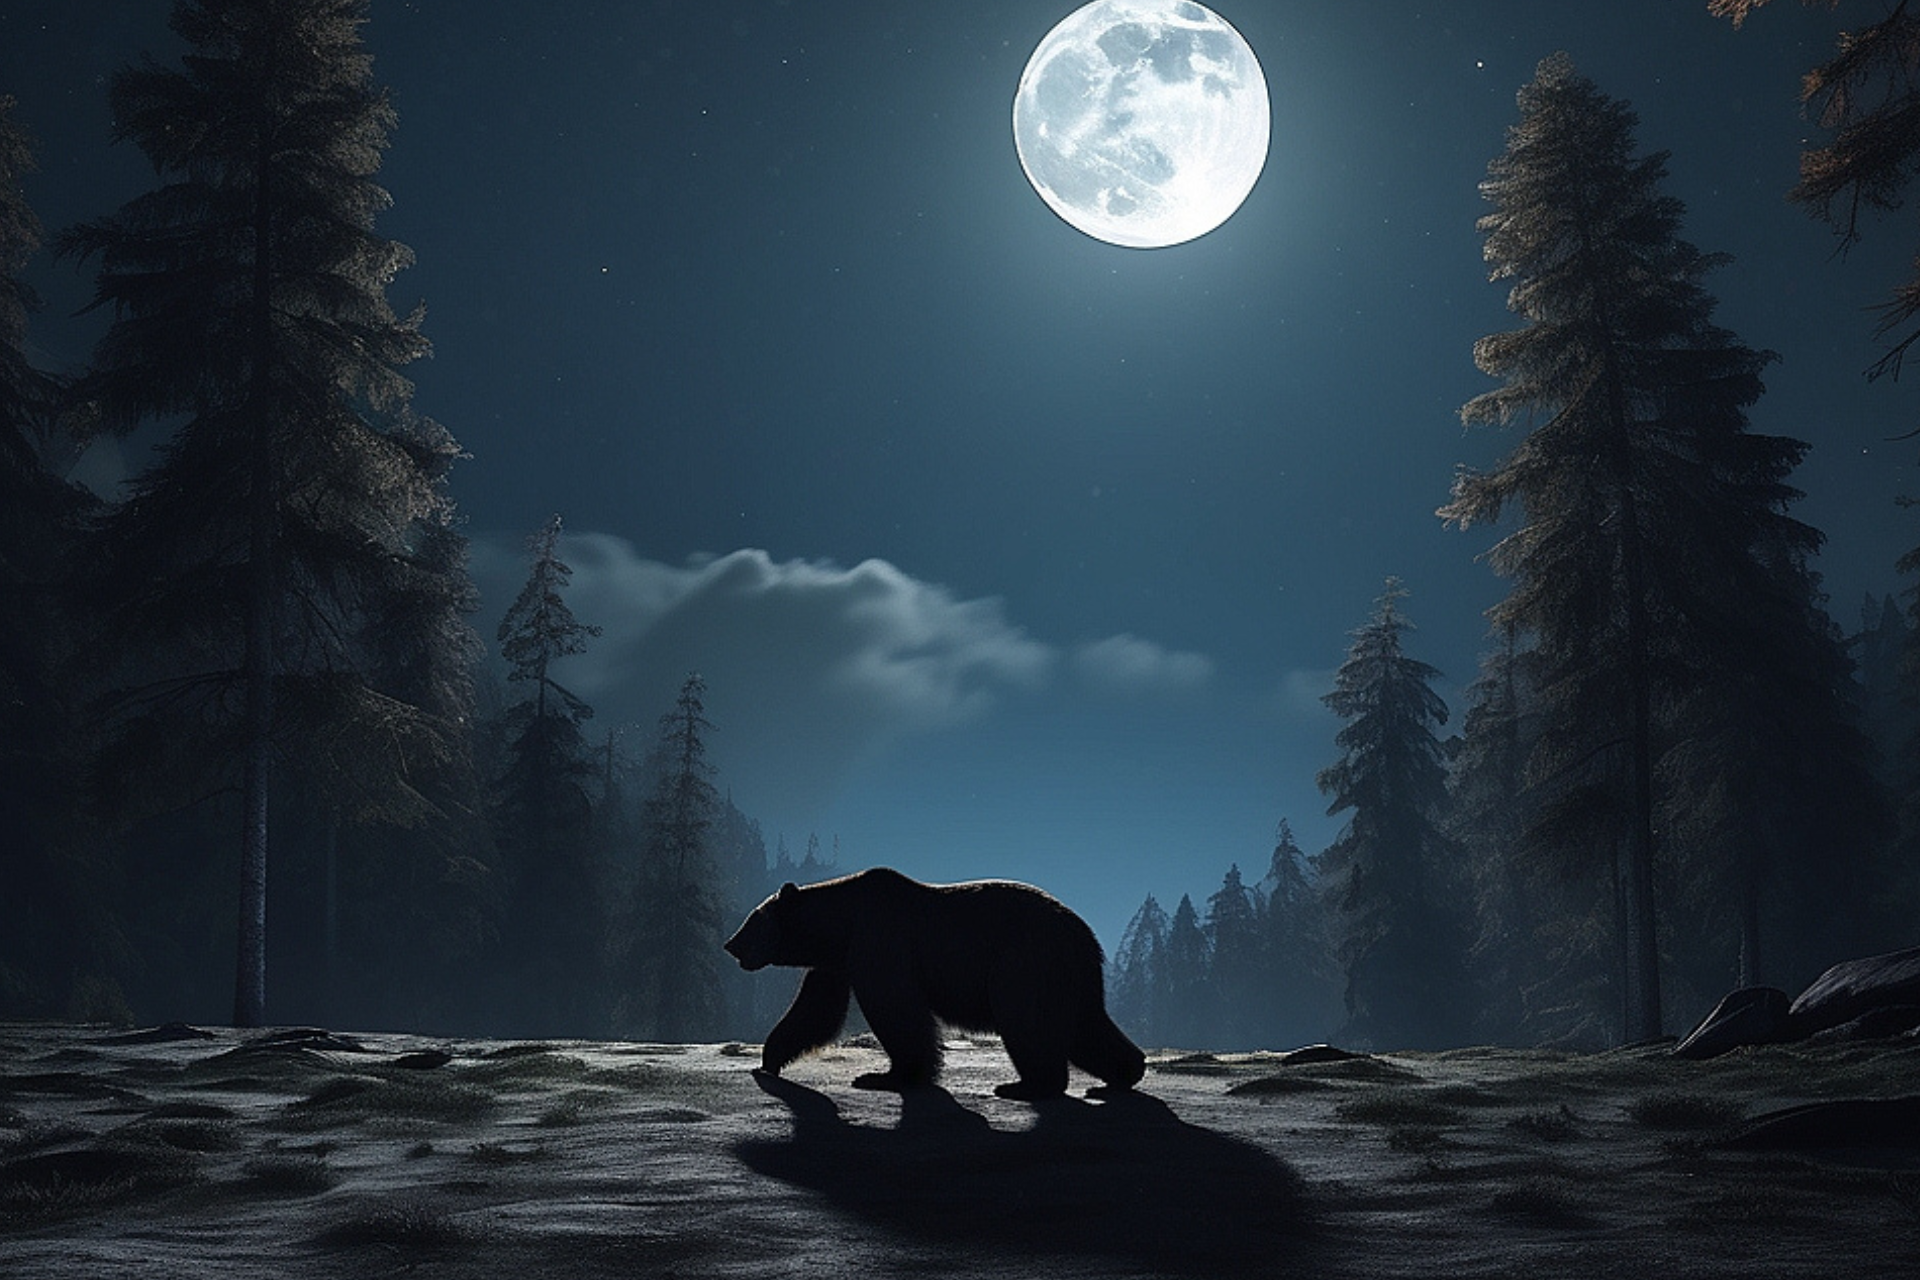 niedźwiedź w lesie, noc, księżyc